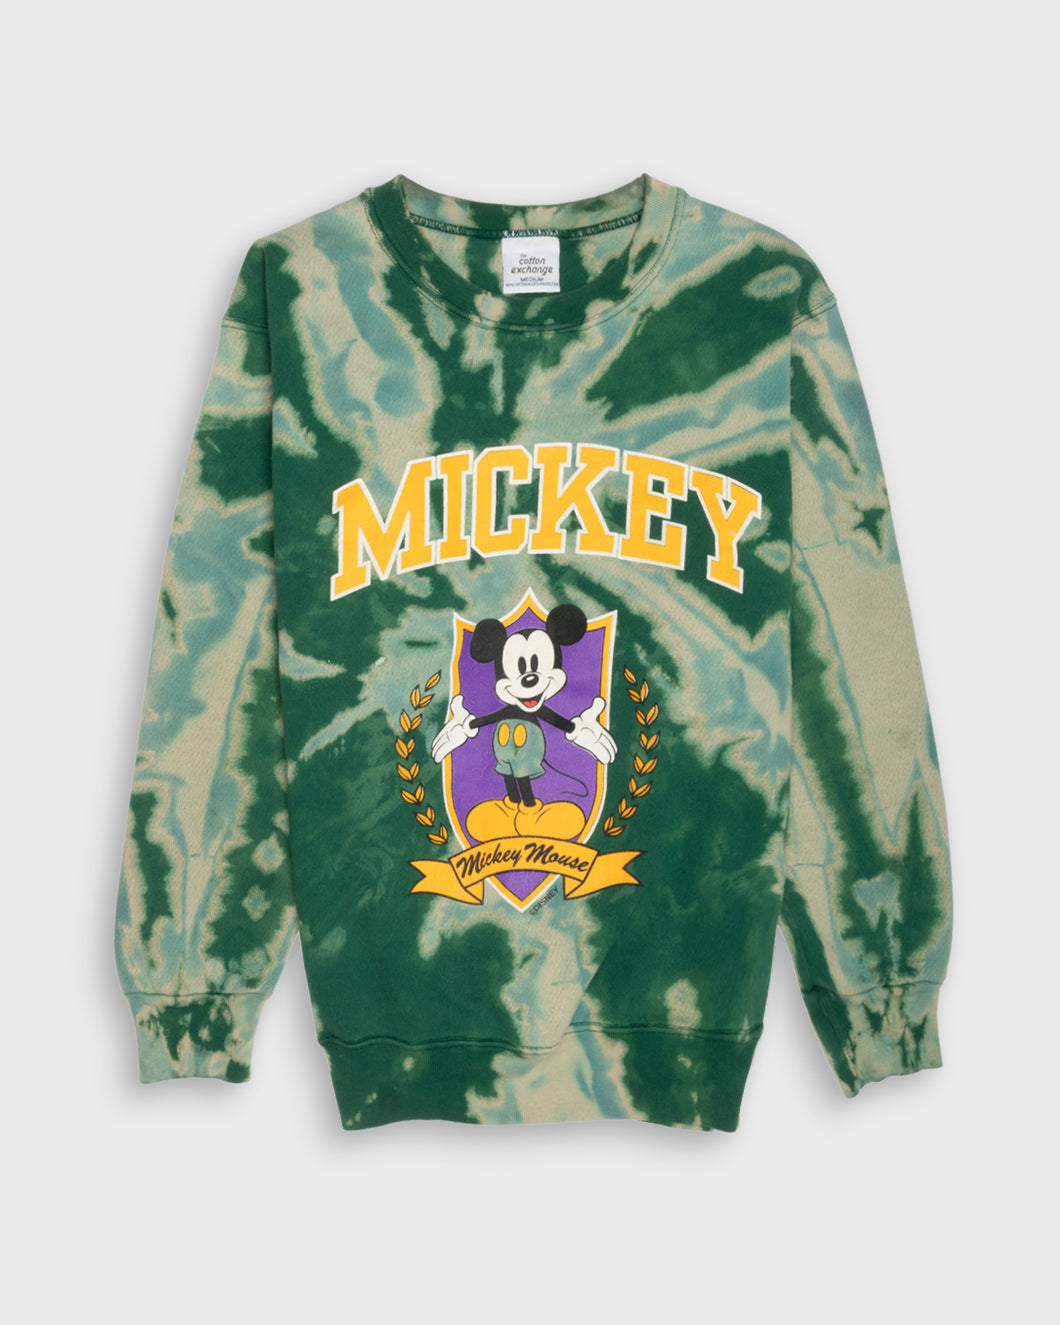 Green tie-dye Mickey Mouse sweatshirt